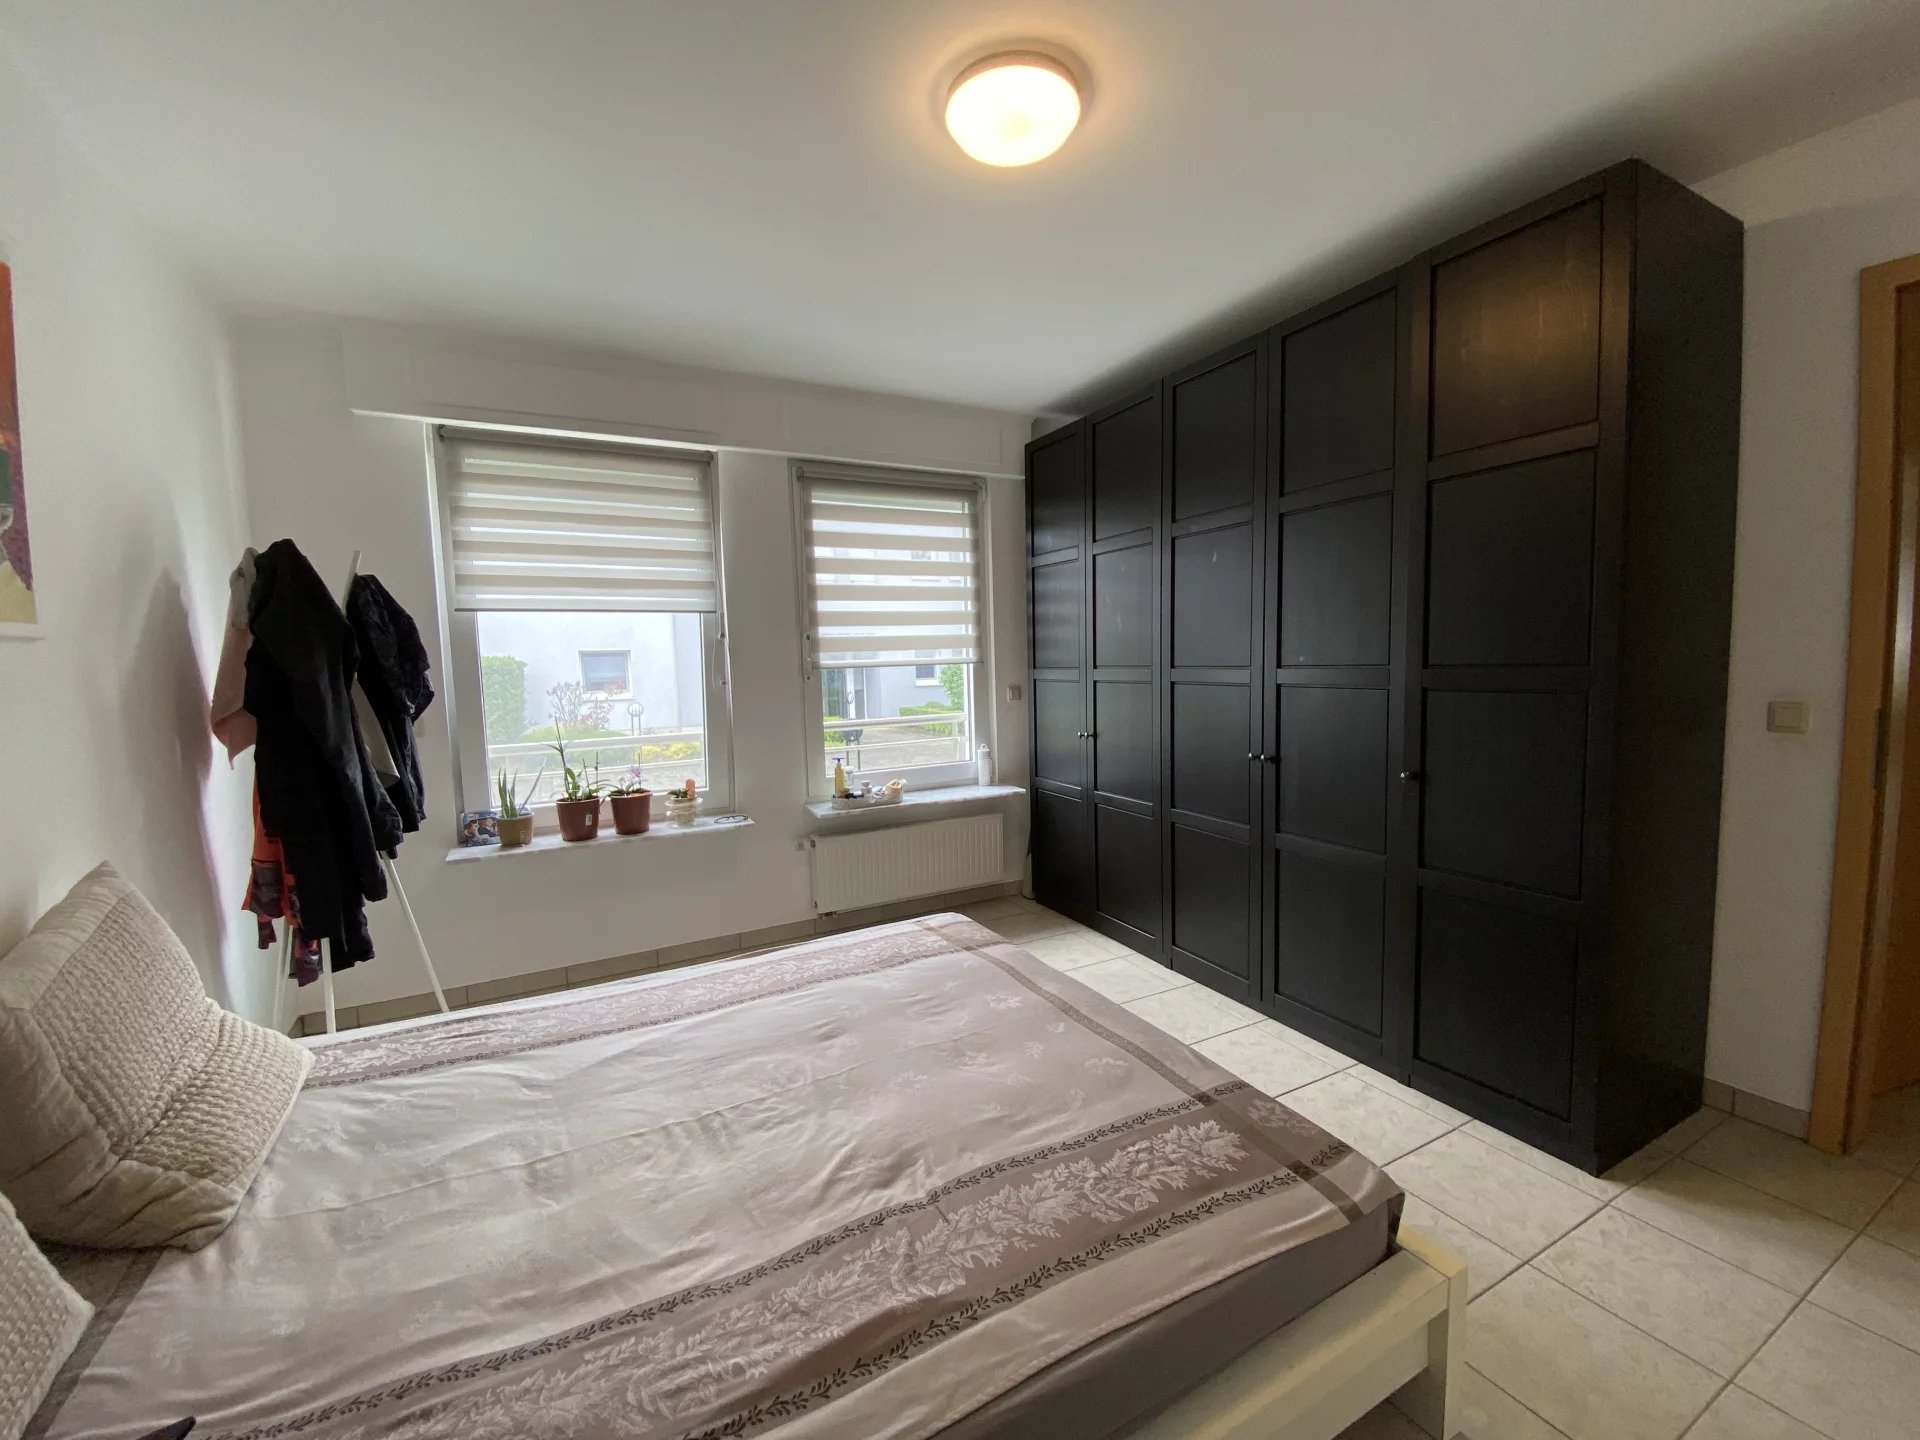 2 bedroom apartment for rent in Gonderange